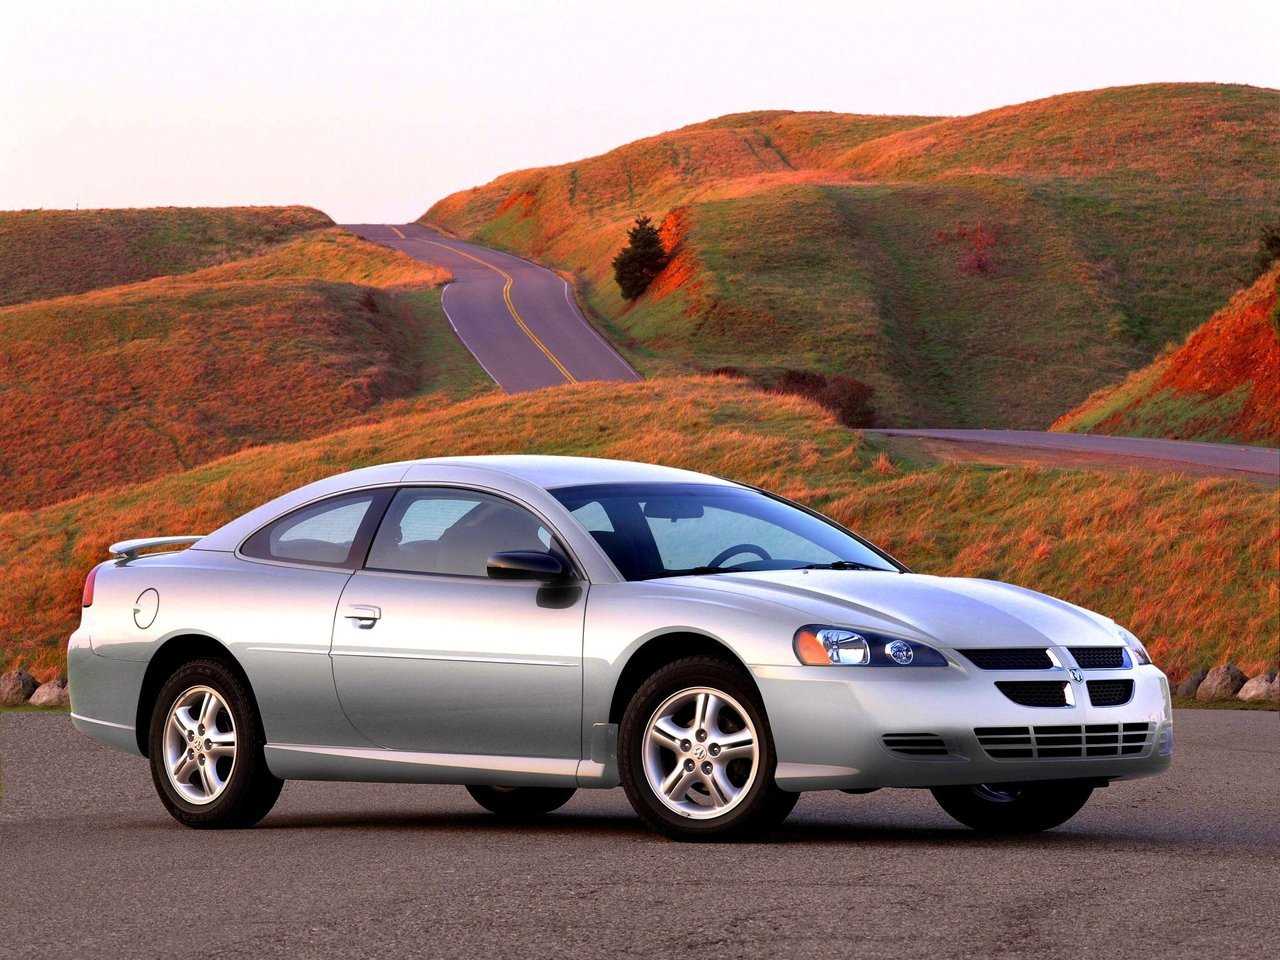 Dodge stratus ii (2000-2006) - стоит ли покупать?